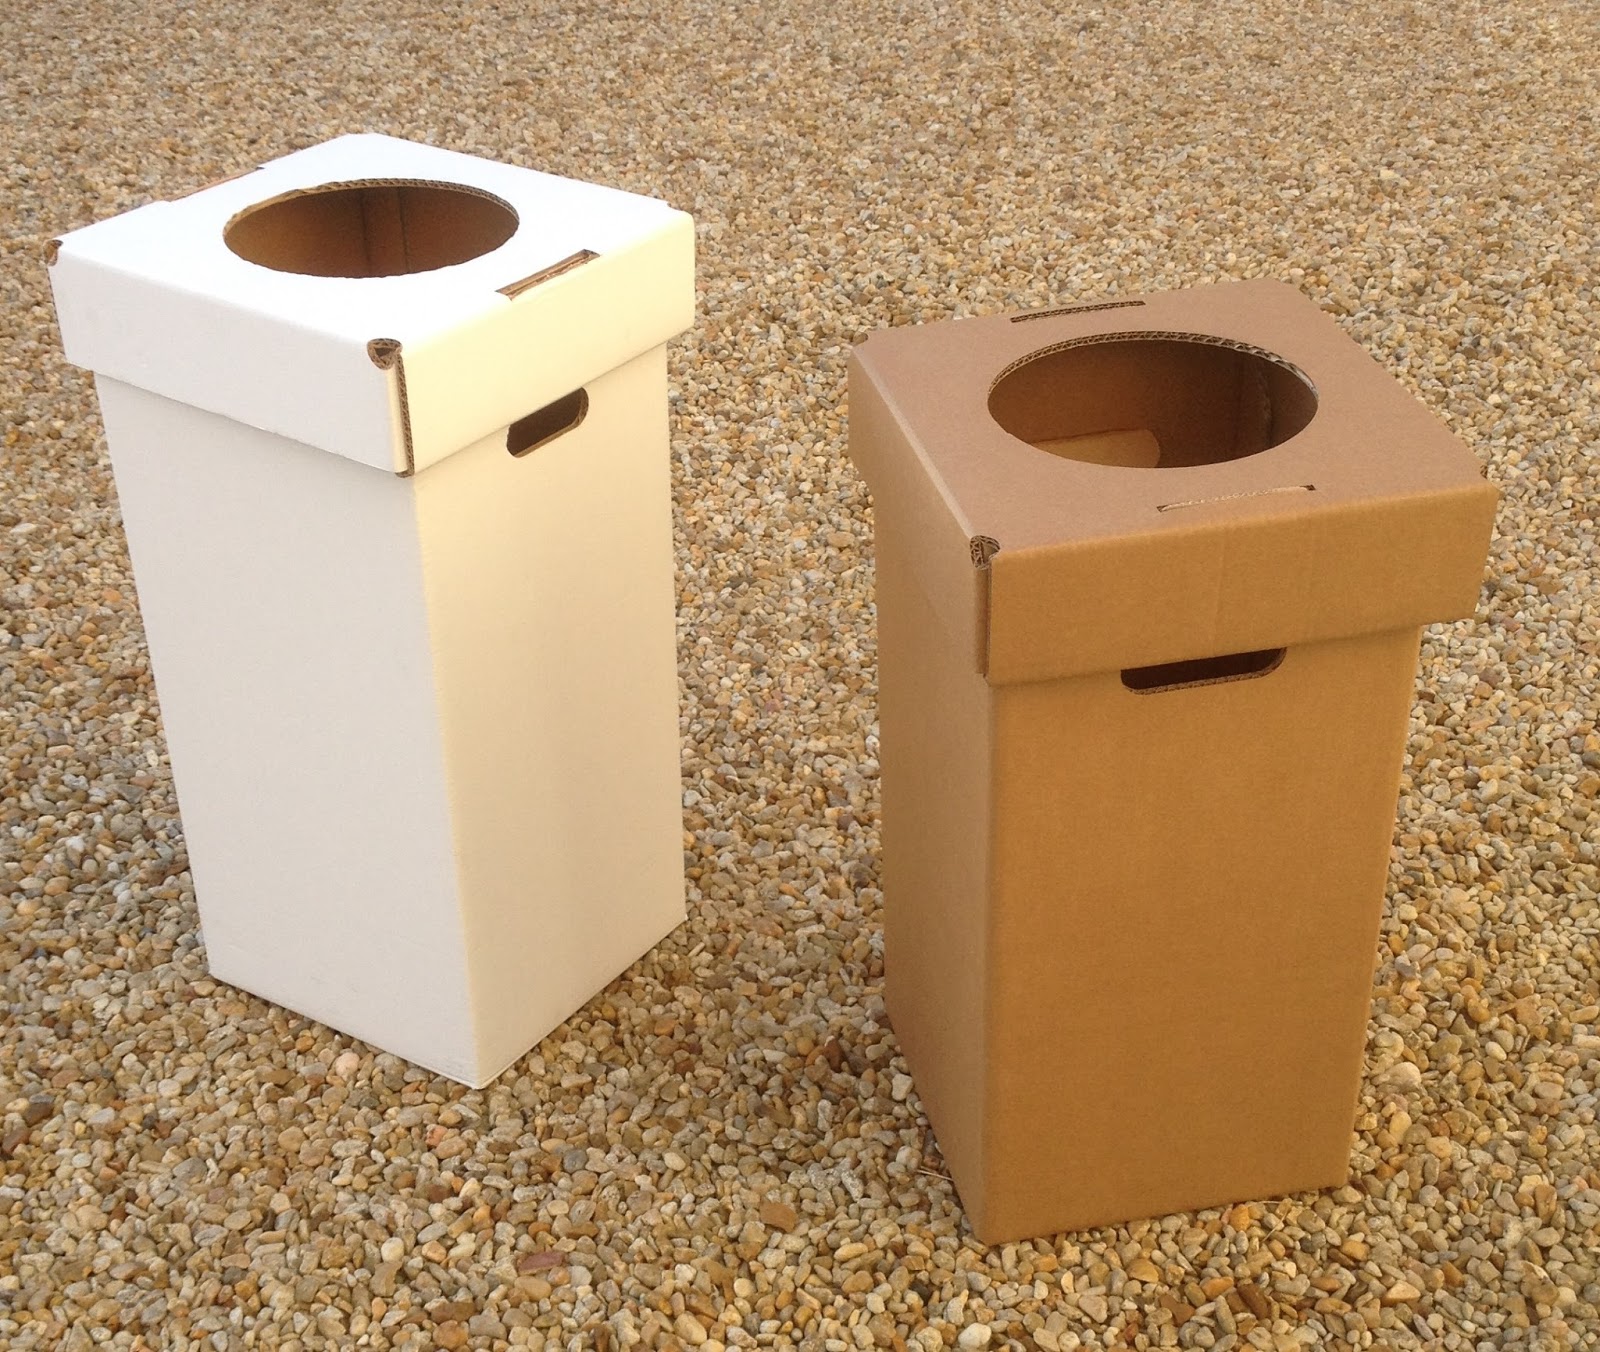 Poubelle en carton recyclé avec logo recyclage imprimé